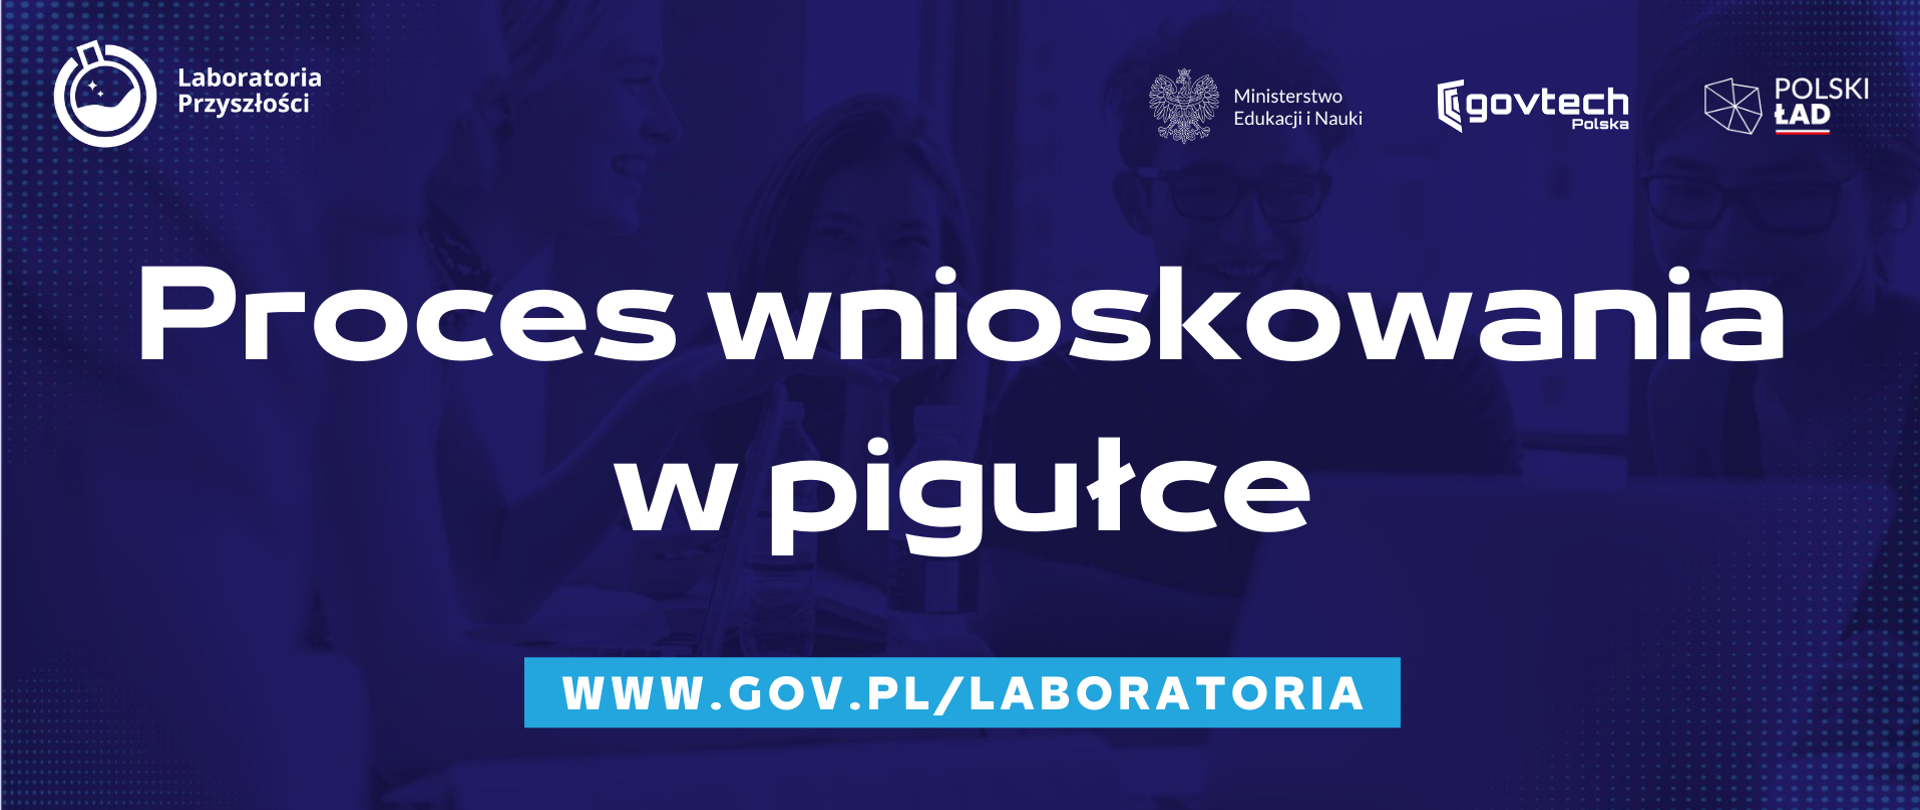 Proces wnioskowania w pigułce
www.gov.pl/laboratoria